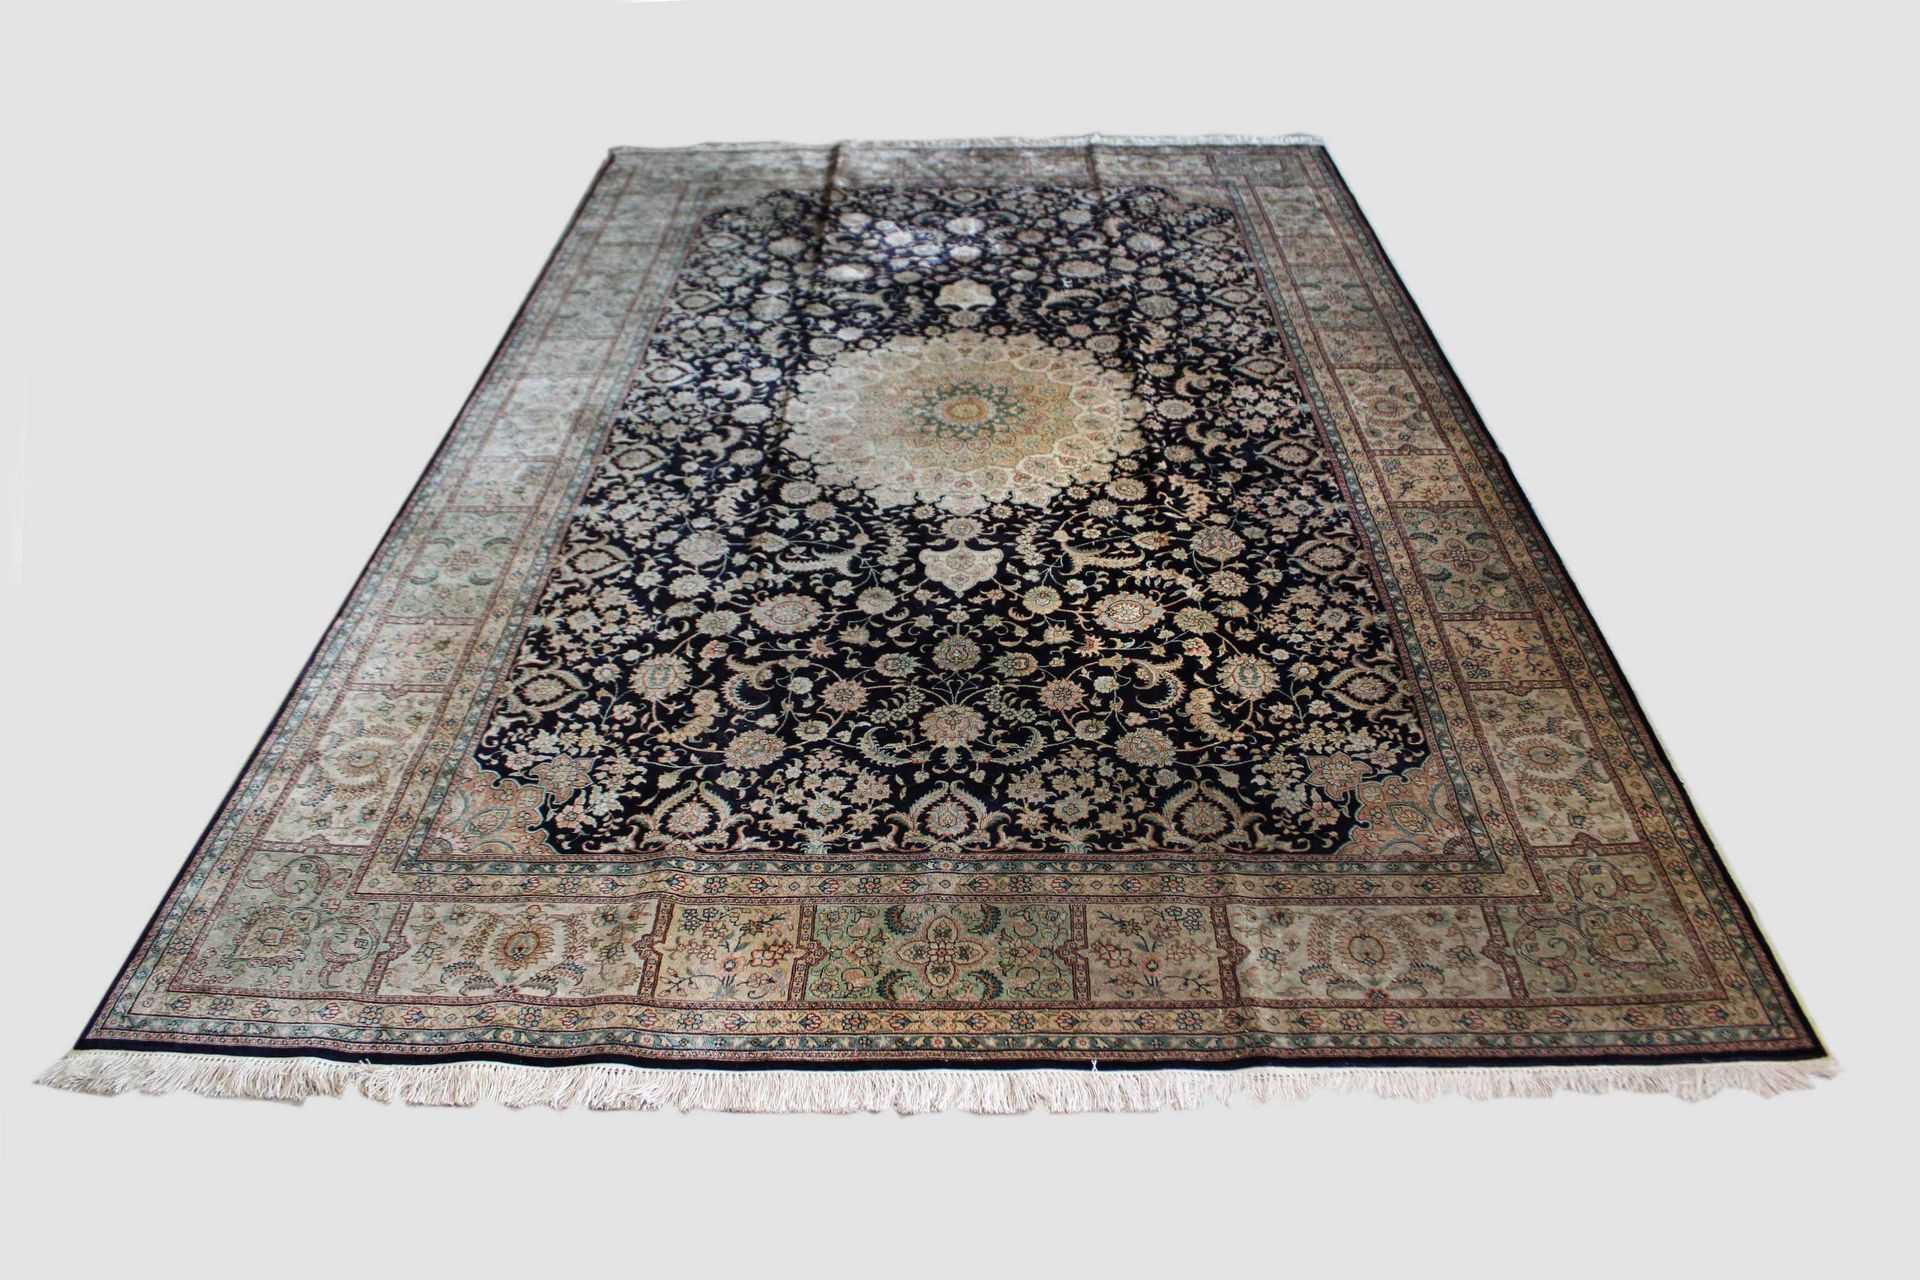 Teppich, China Carpet, China, silk. Dimensions: 185 x 283 cm.